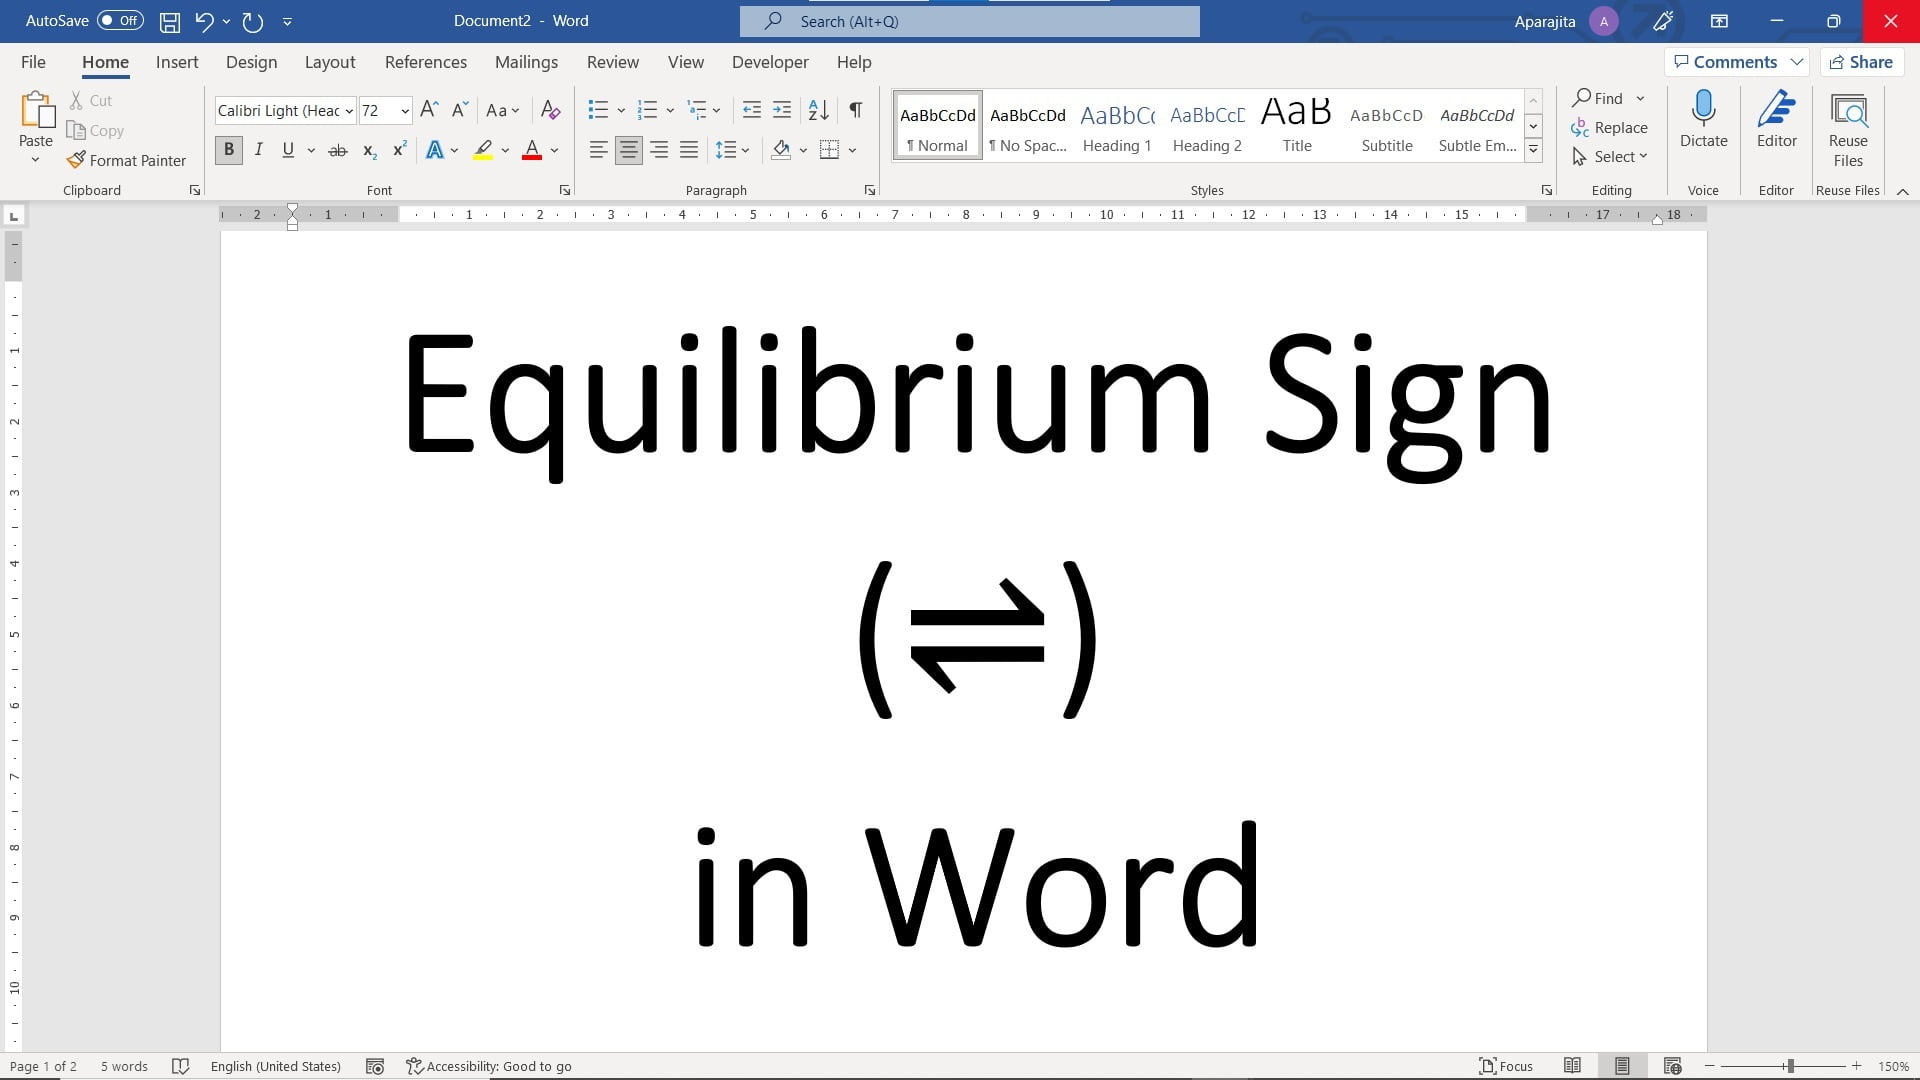 Equilibrium sign in Word